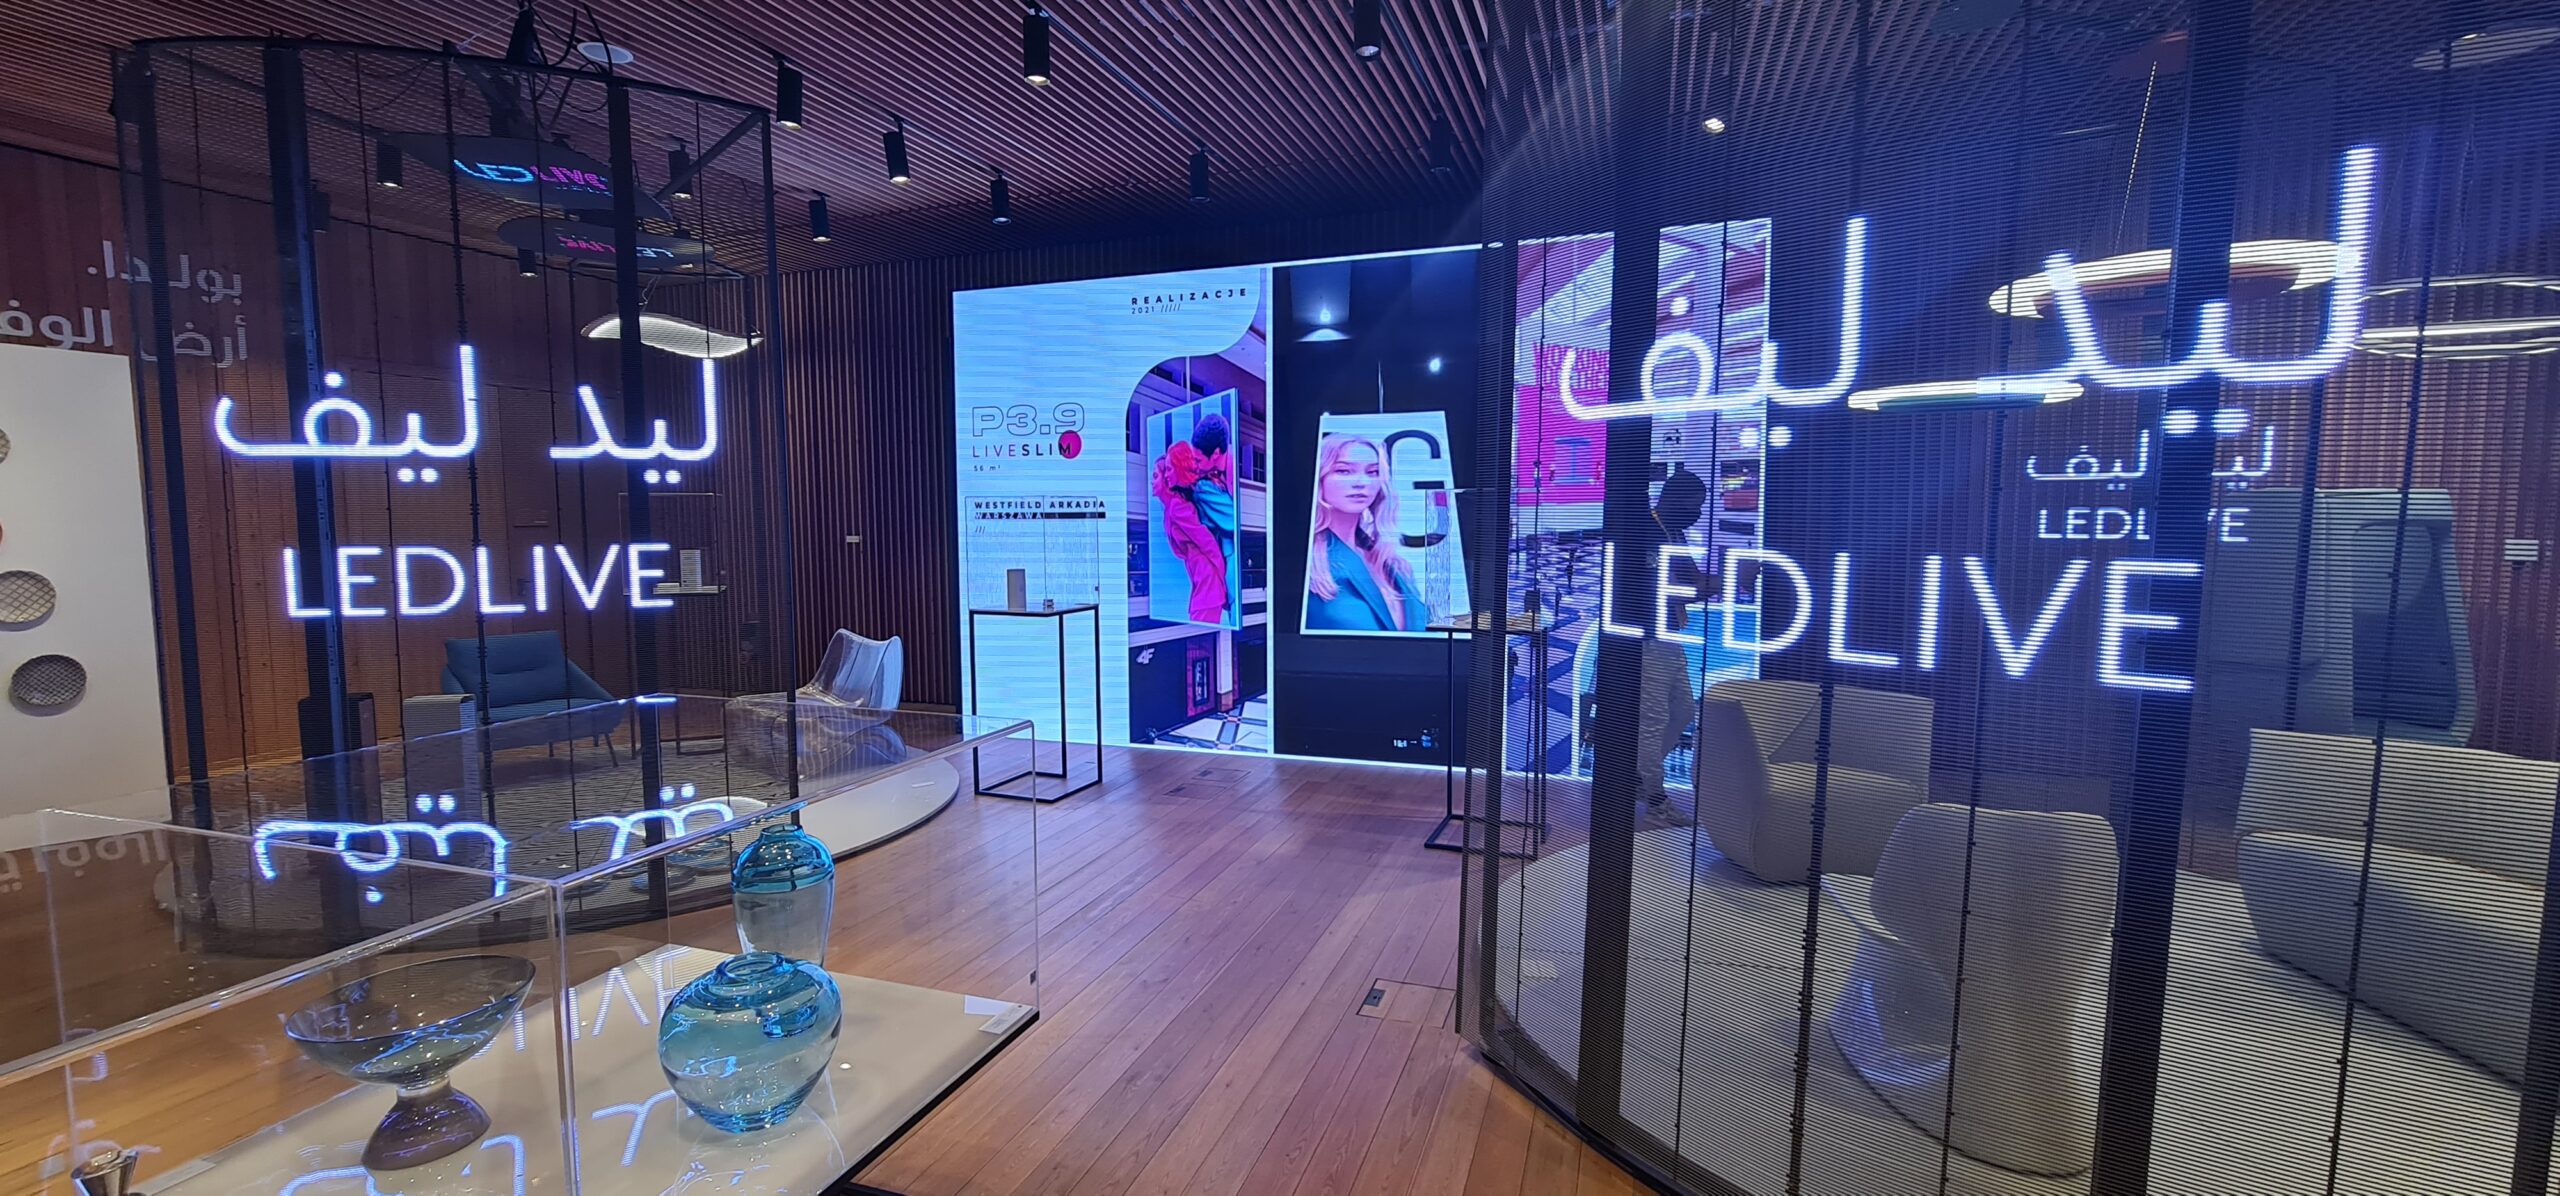 Prezentacja realizacji INDOOR RETAIL na ekranie LED firmy LedLIVE w trakcie EXPO Dubai 2020